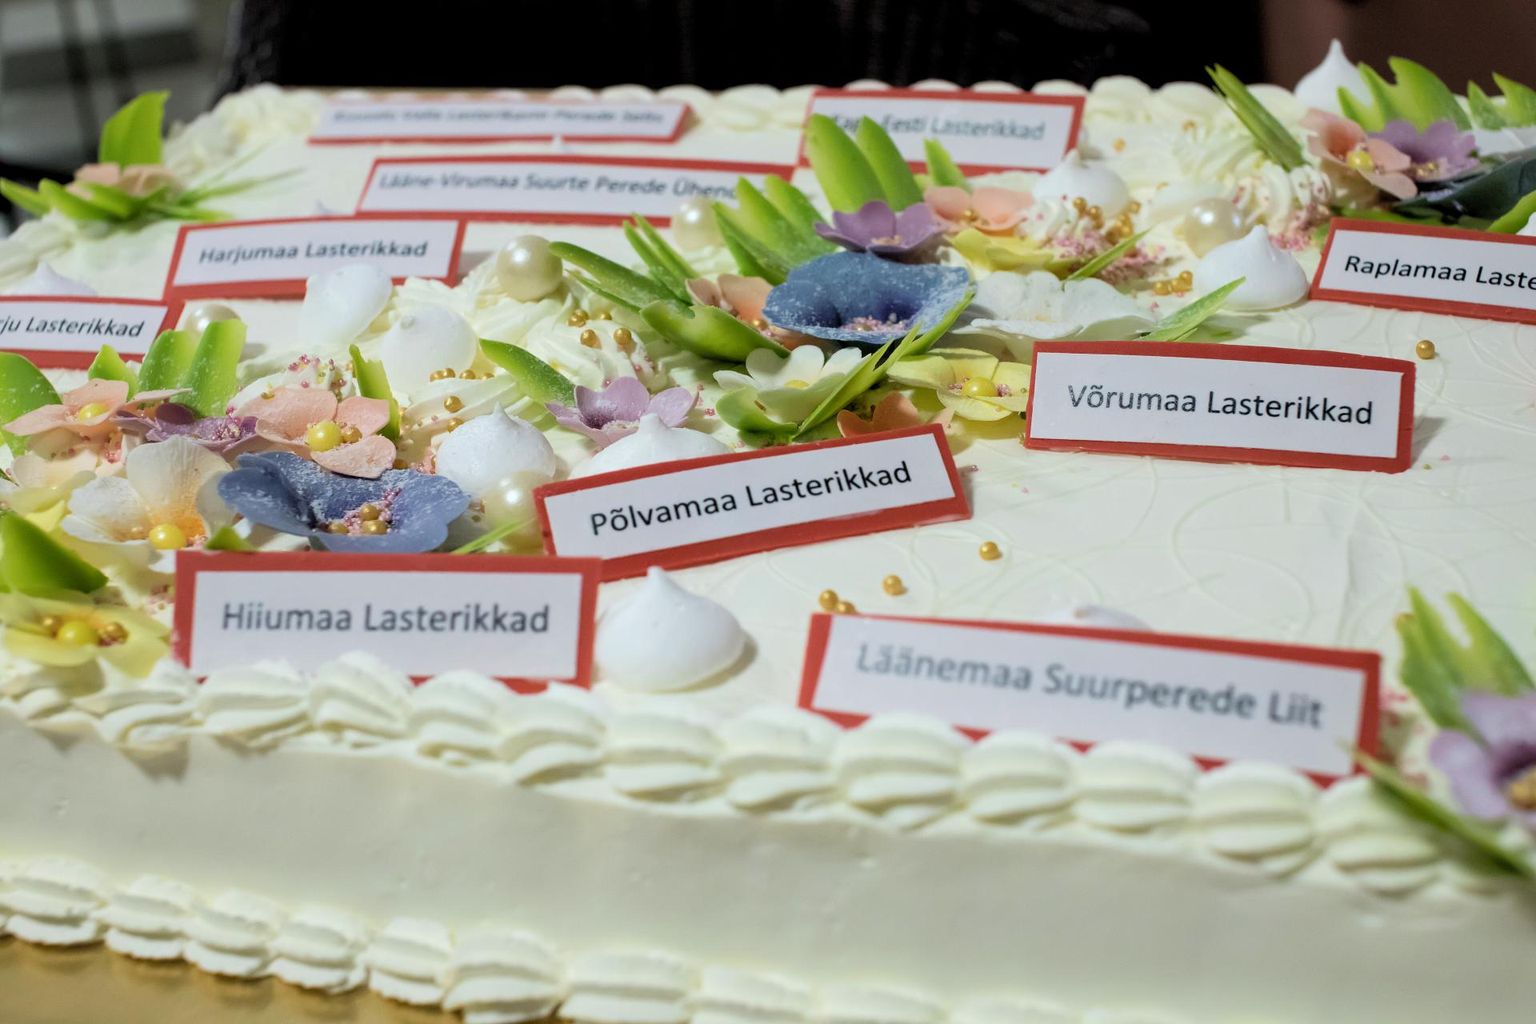 Eesti Lasterikaste Perede Liidu sünnipäevatort, mida kaunistavad liikmesorganisatsioonide nimed. Liidu võrgustikku kuulub ligi 3000 perekonda, kellel kokku enam kui 10 000 last.